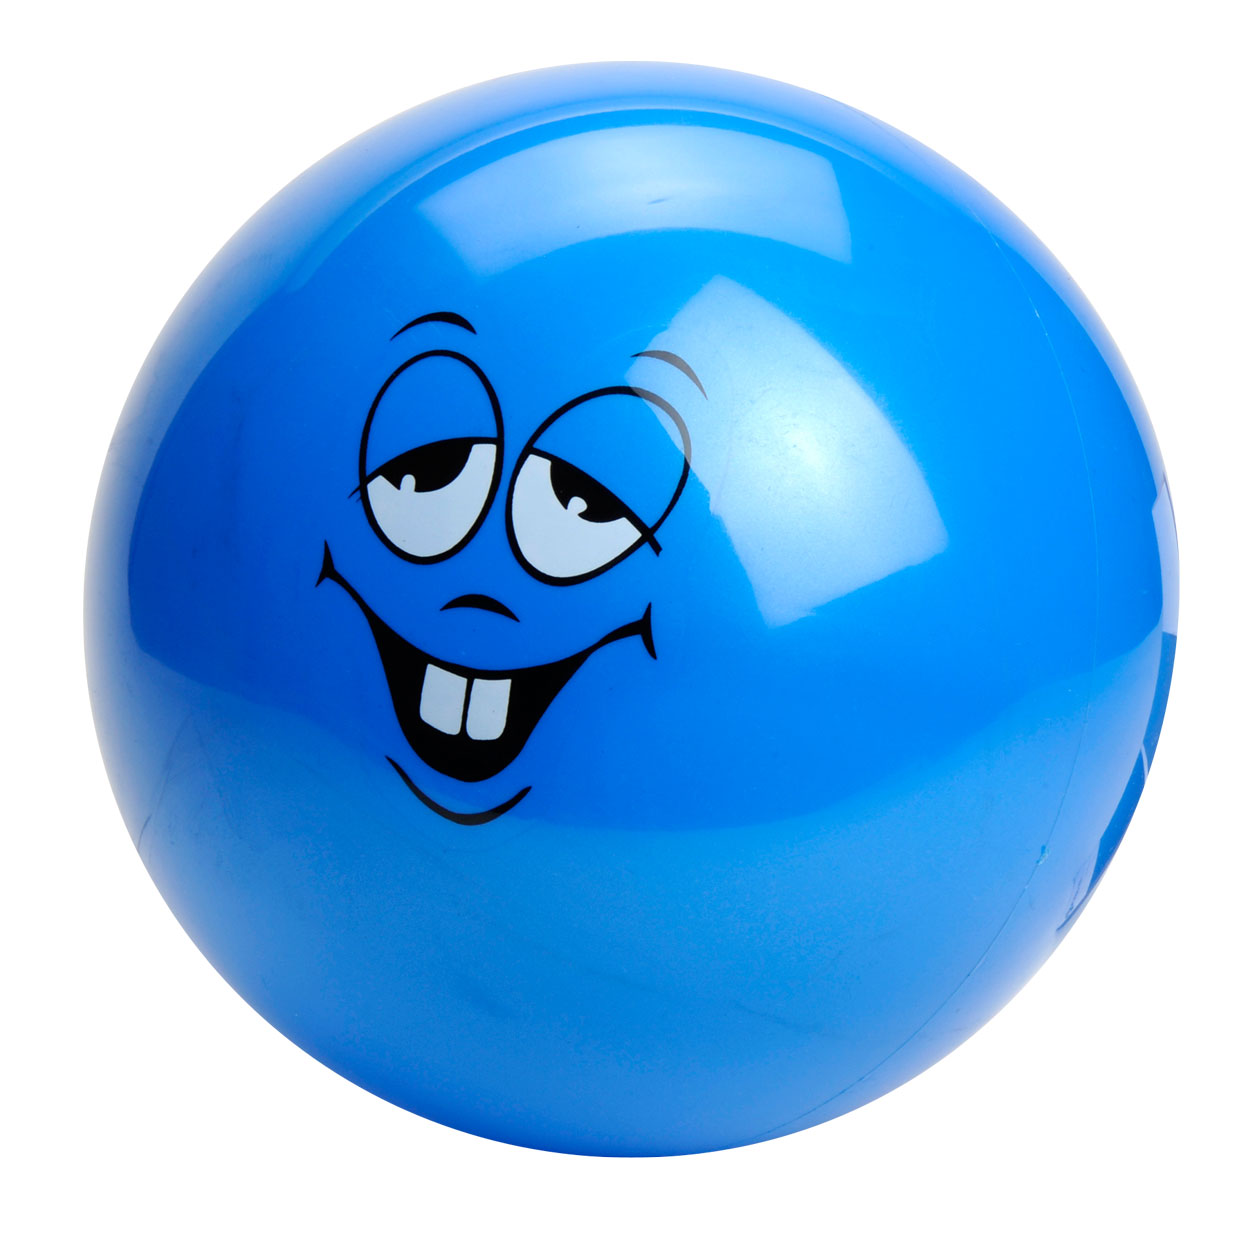 Ball mit Smiley-Gesicht, 20cm